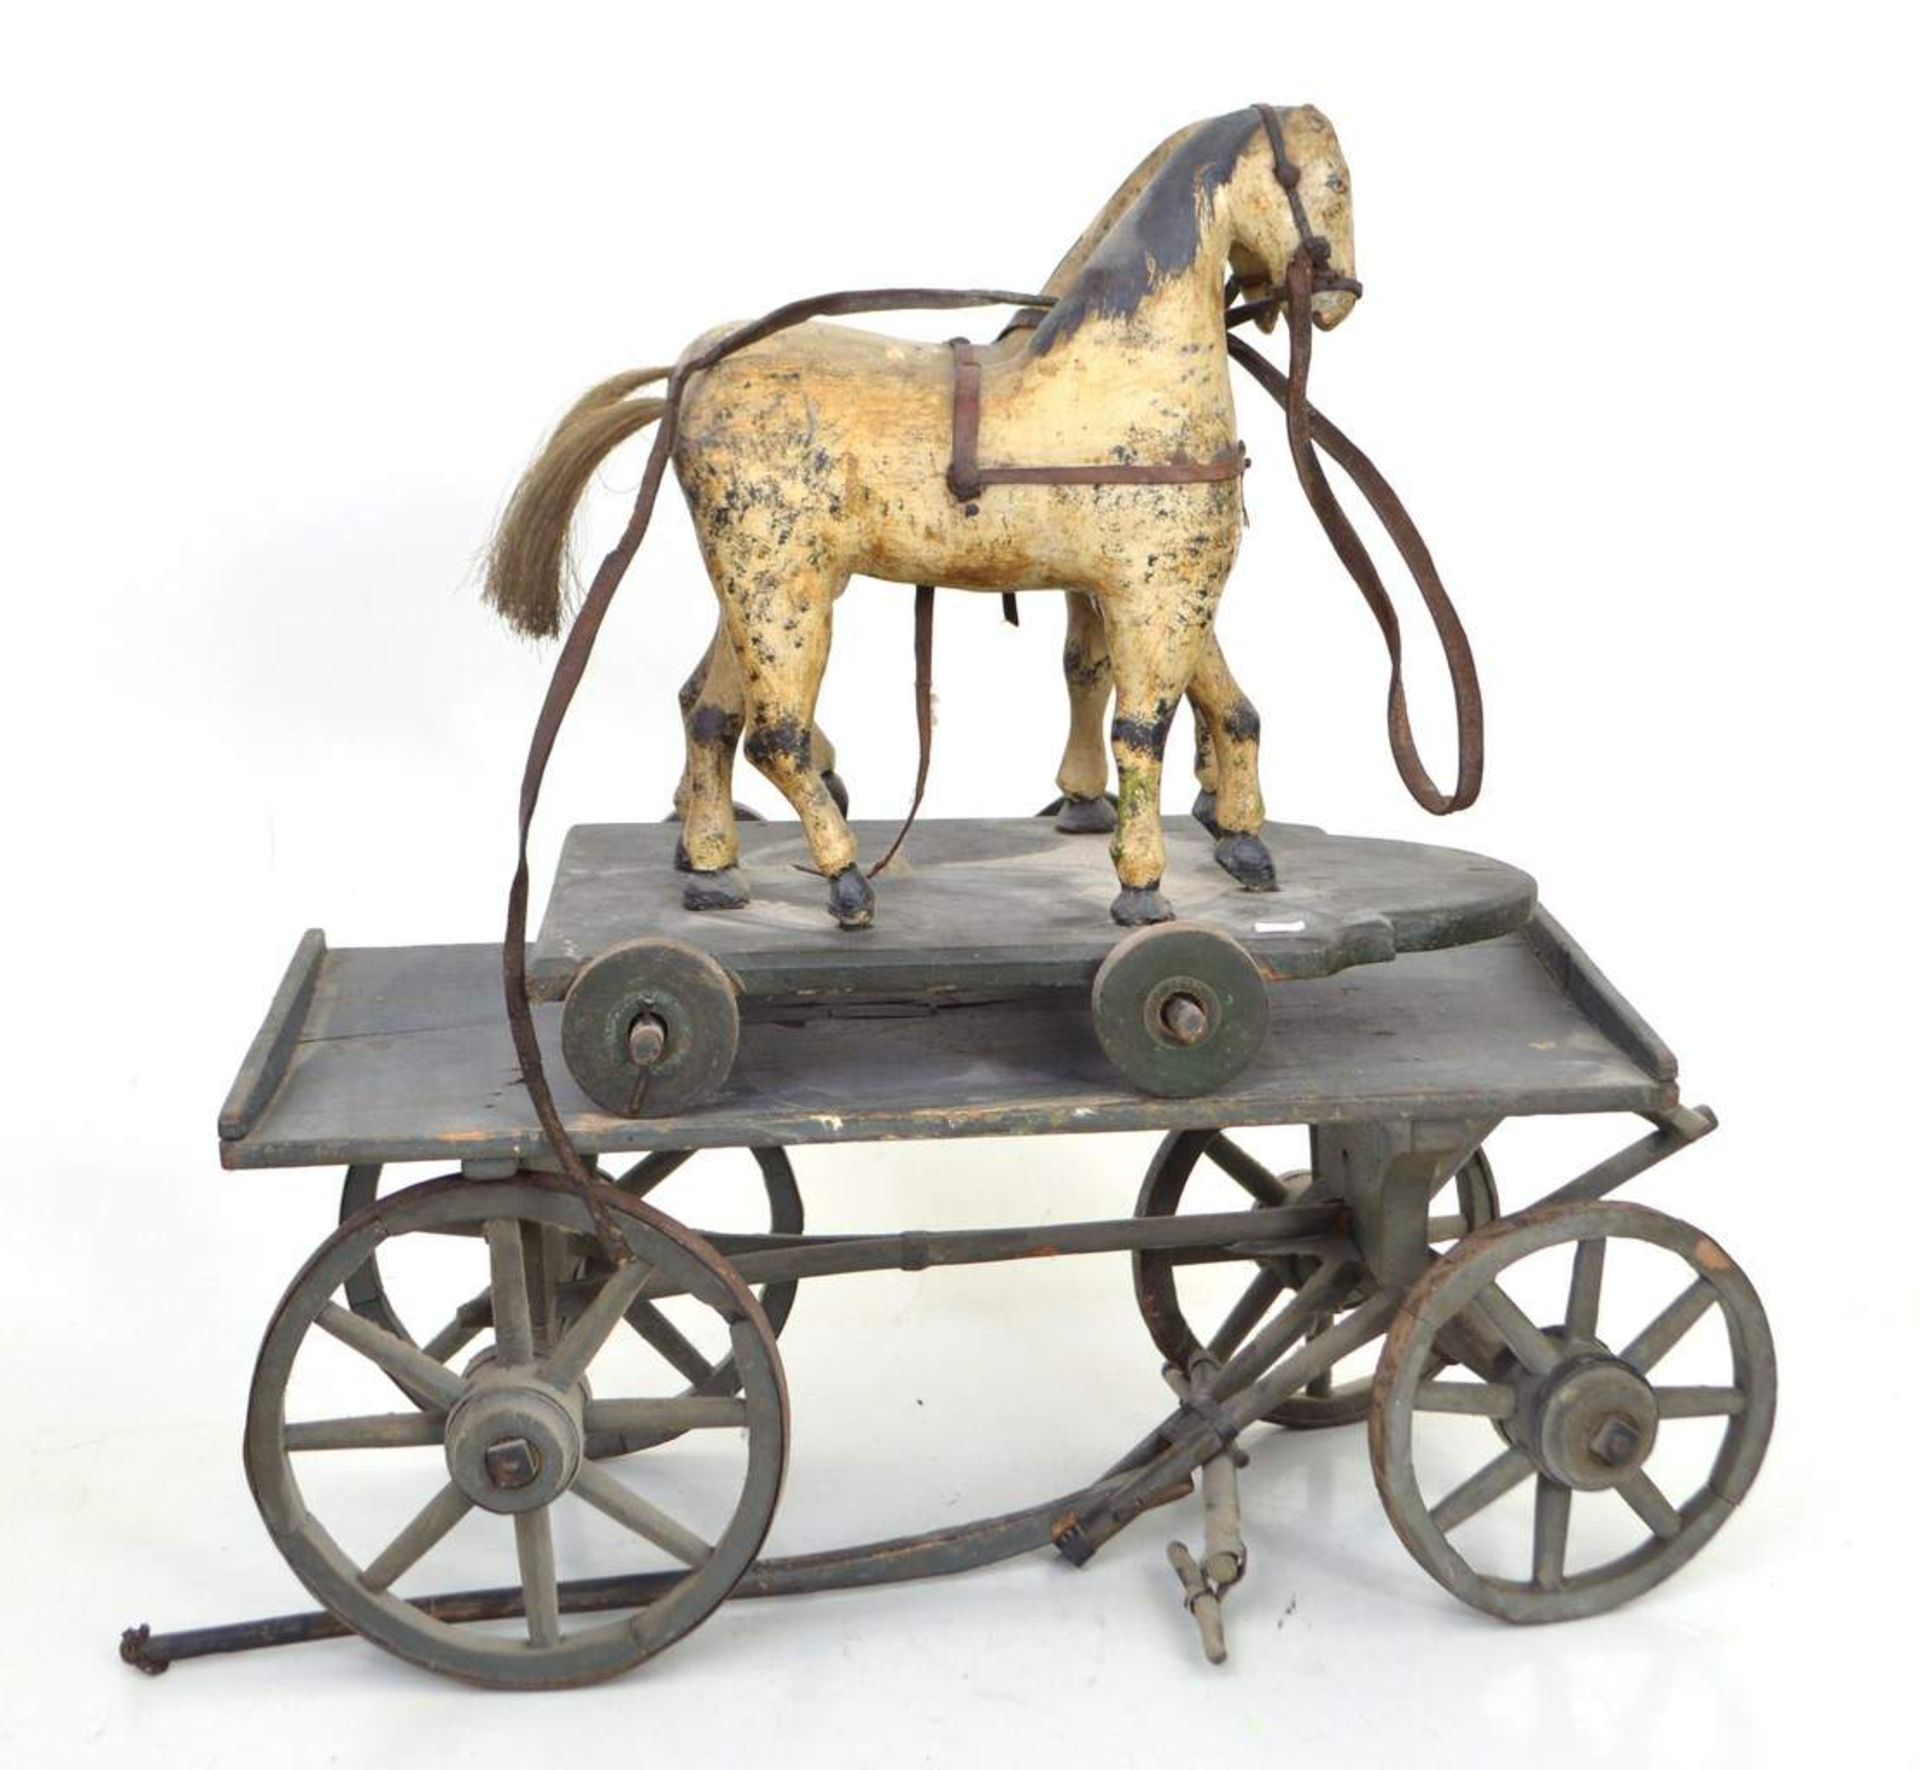 Zwei Pferde mit WagenHartholz, geschnitzt, H 30 cm, L 90 cm, um 1920Mindestpreis: 30 EUR